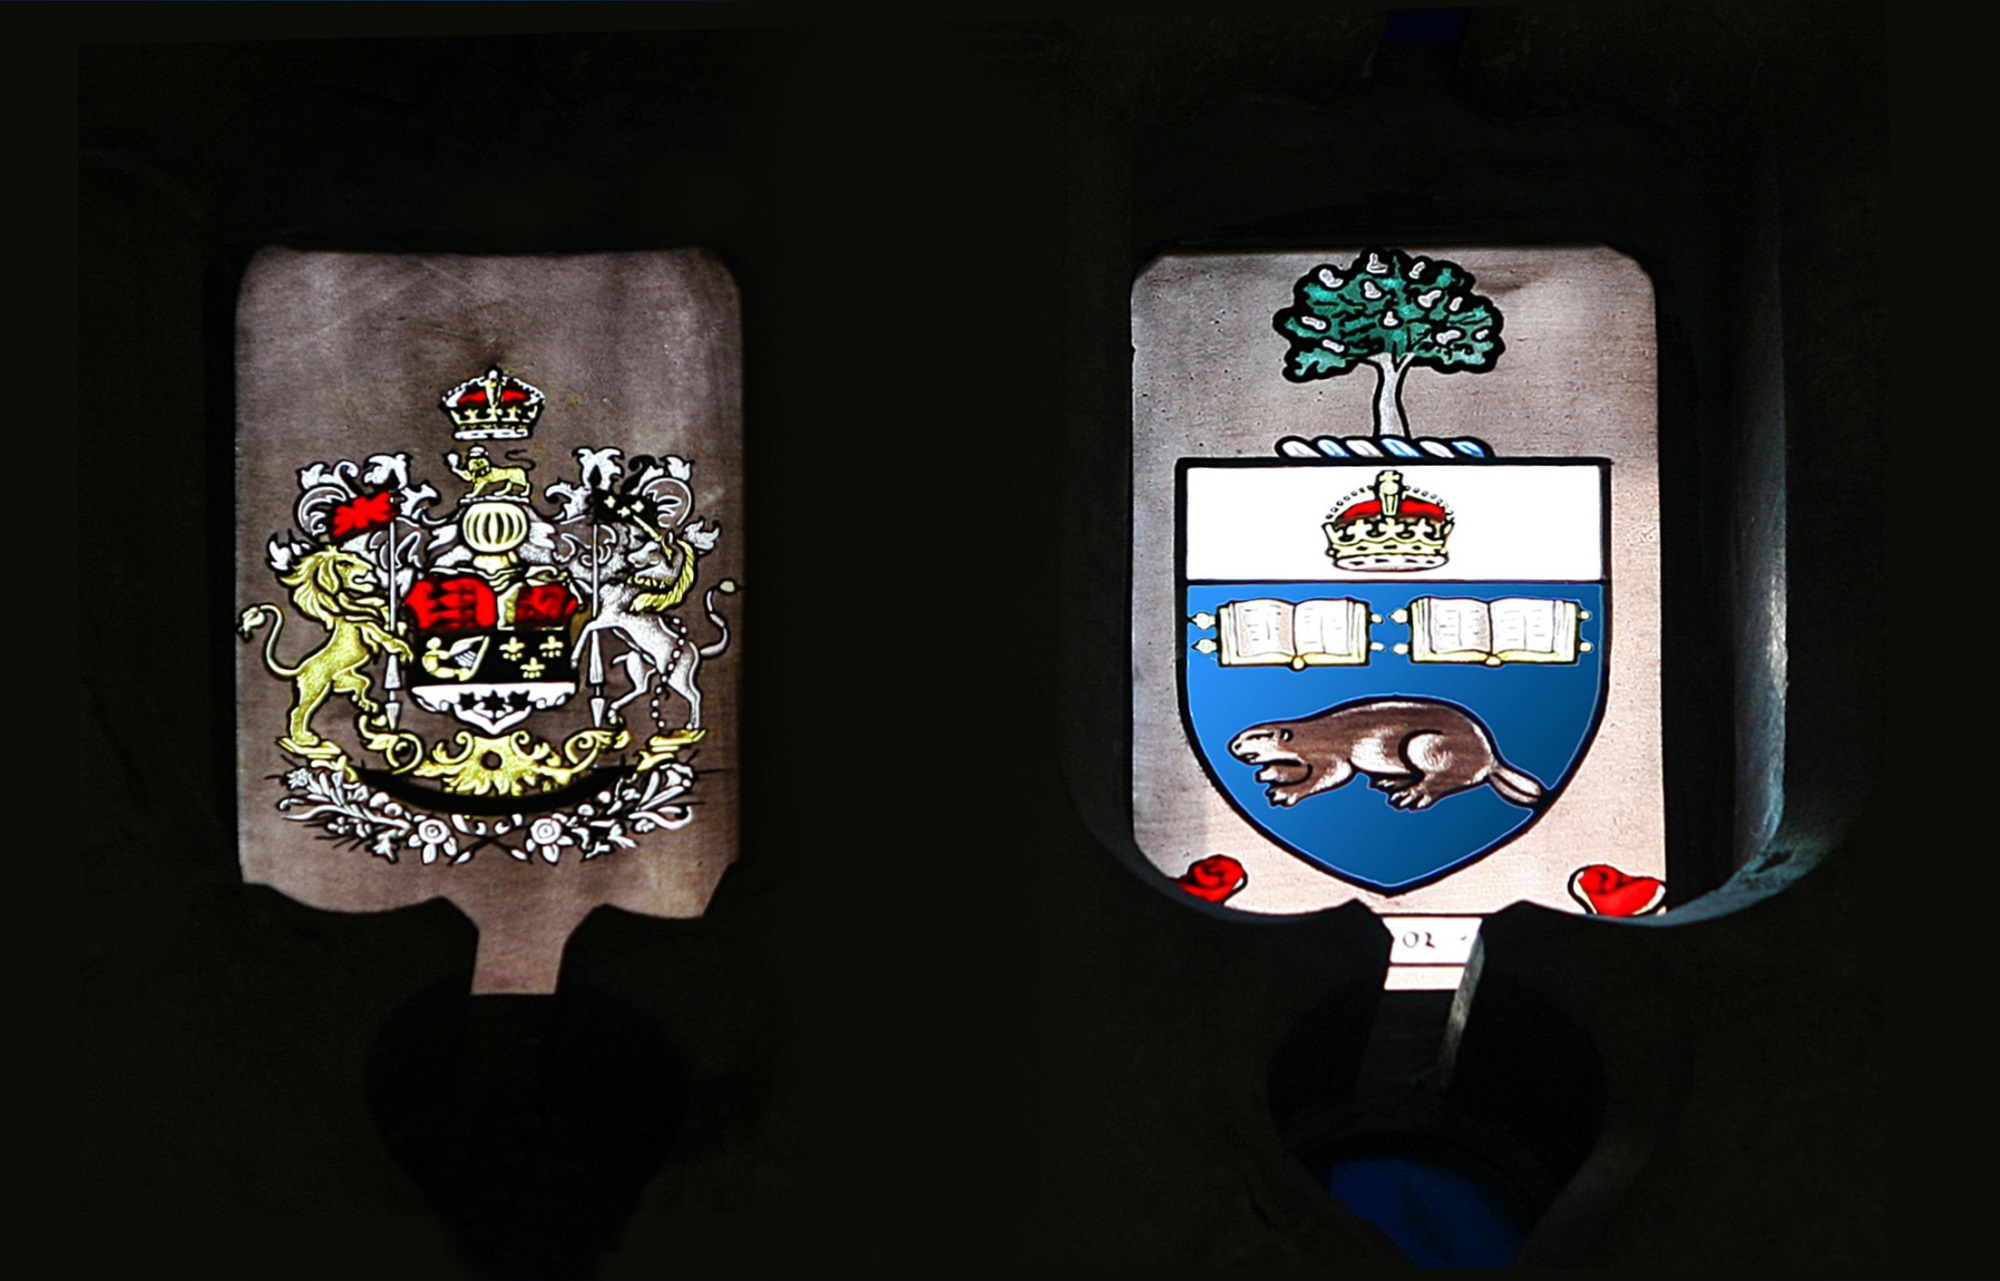 Détail du vitrail commémoratif – armoiries du Canada et insigne de l’Université de Toronto